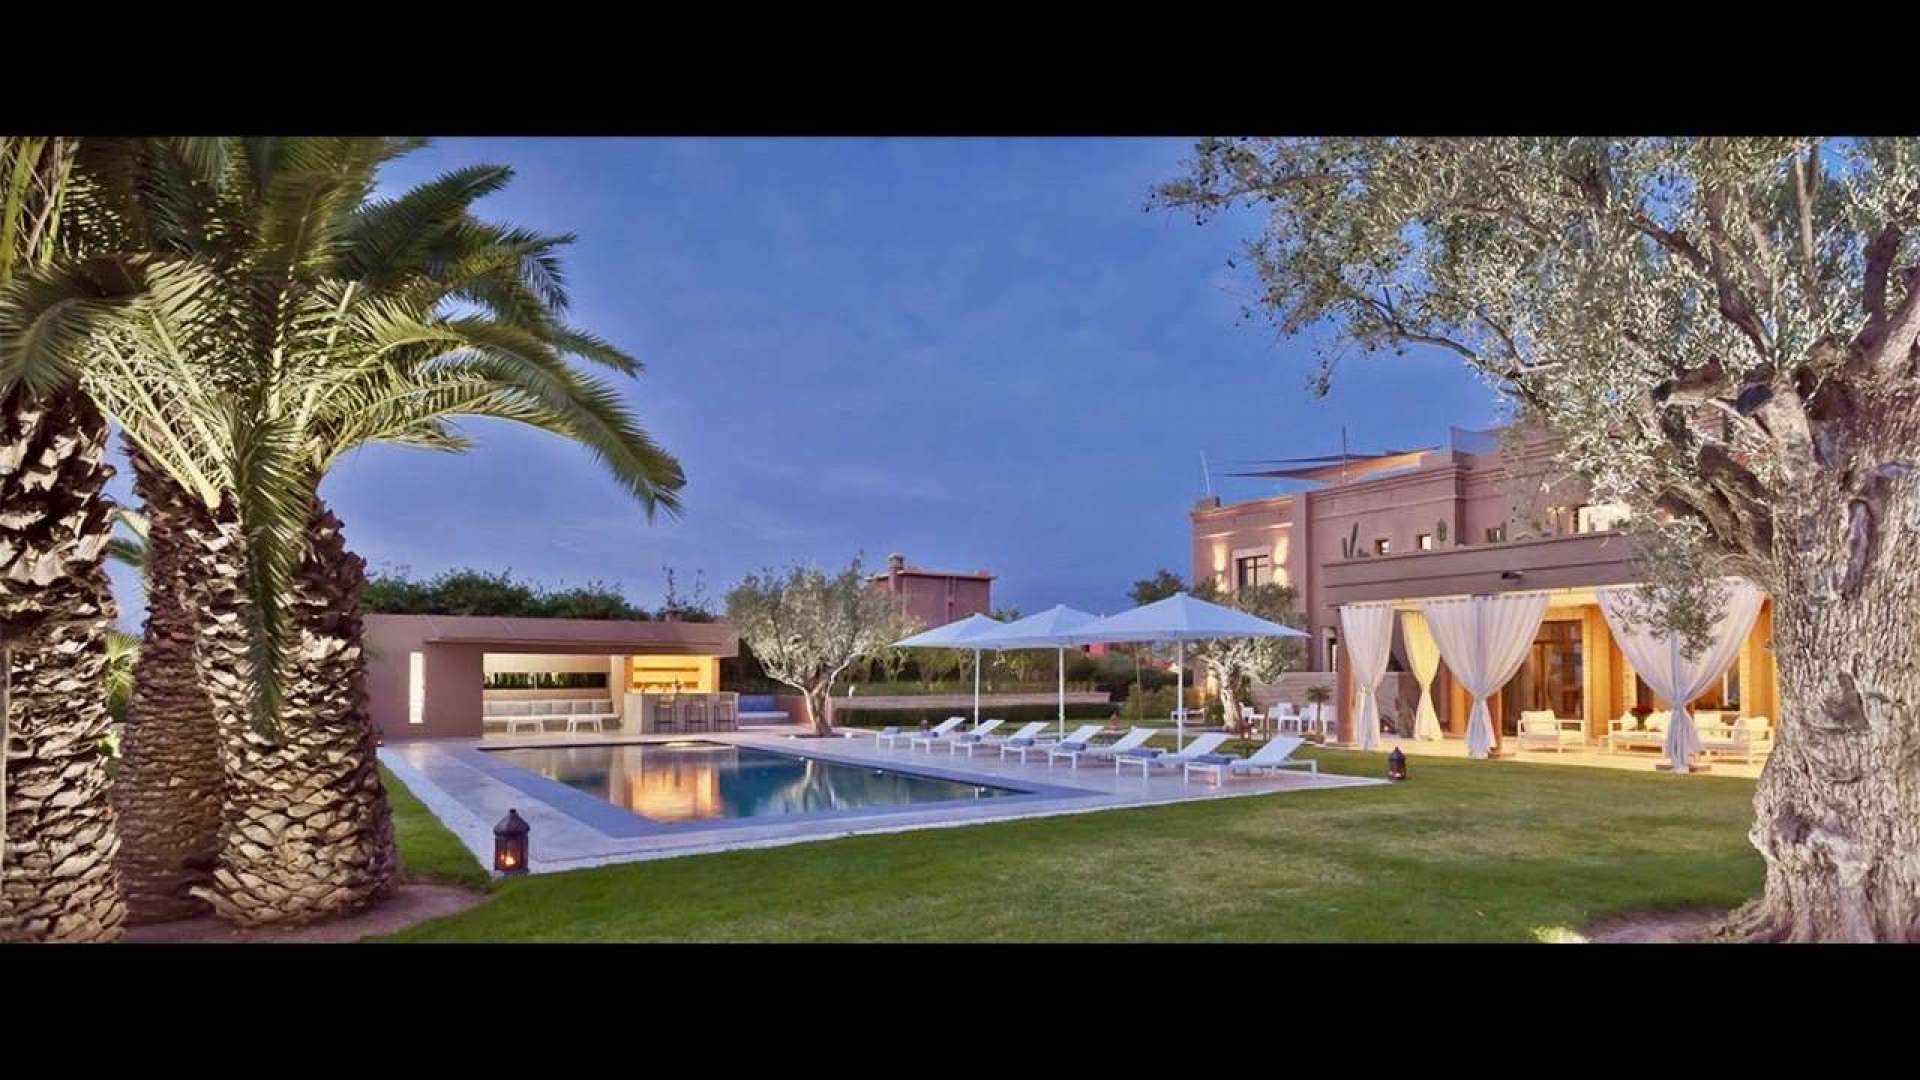 Location de vacances,Villa,Location saisonnière Villa sur golf de luxe de 5 suites en première ligne sur golf à Marrakech,Marrakech,Route Amizmiz